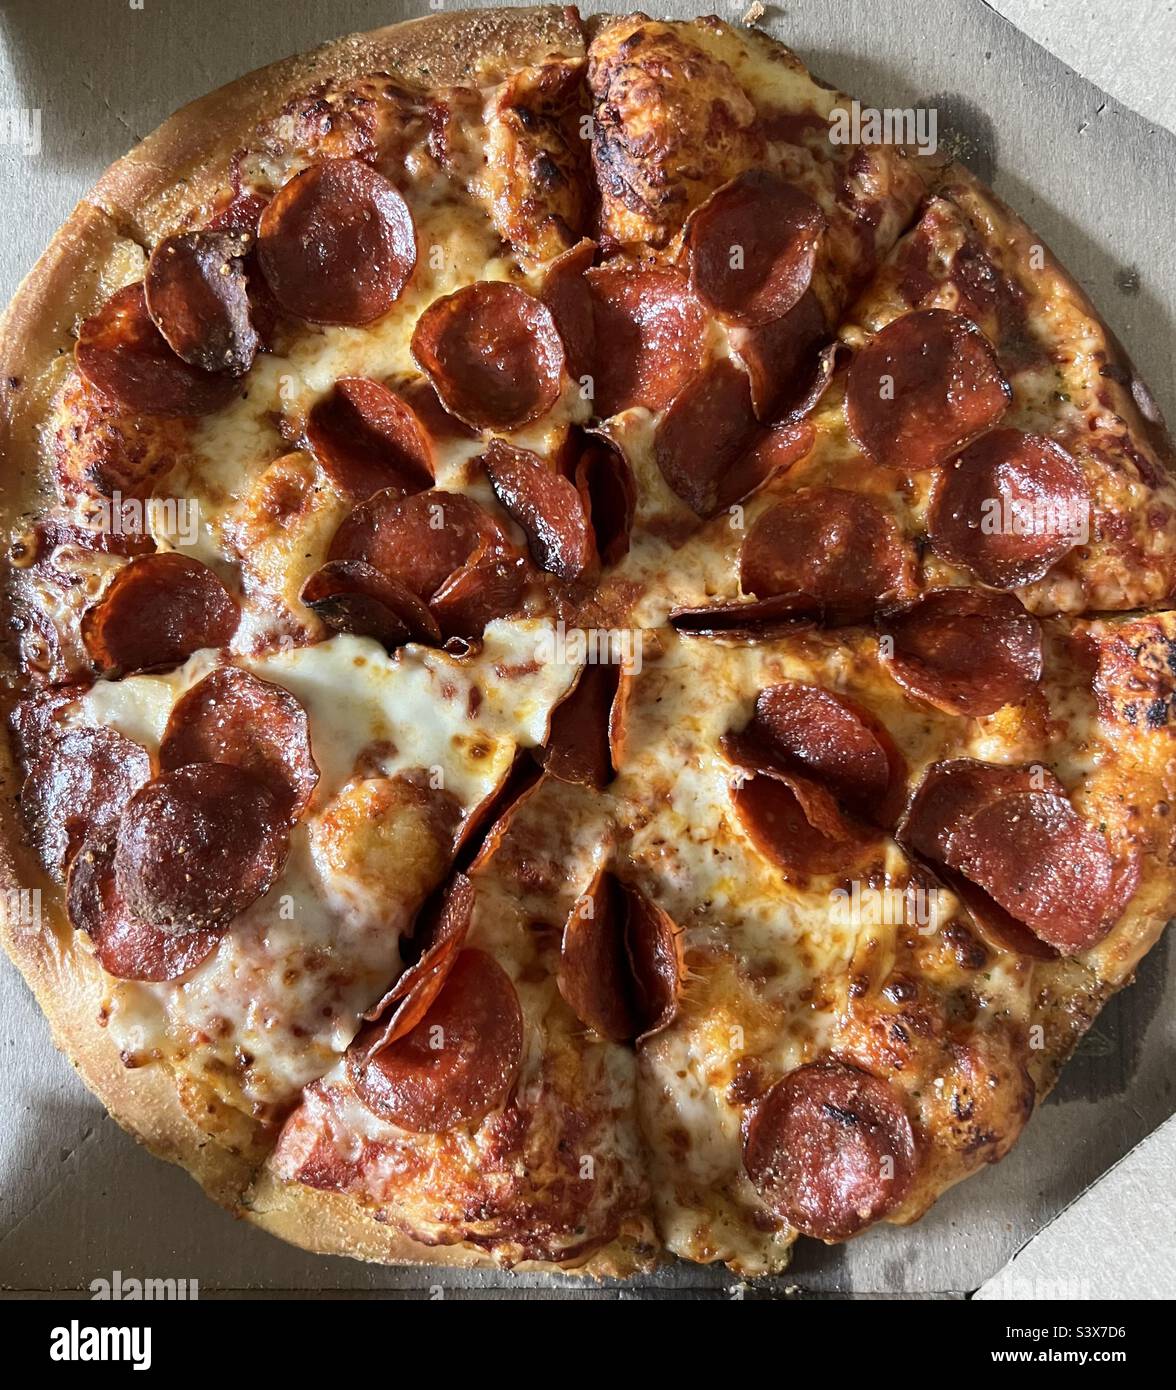 Vue de dessus de la pizza au pepperoni Banque D'Images